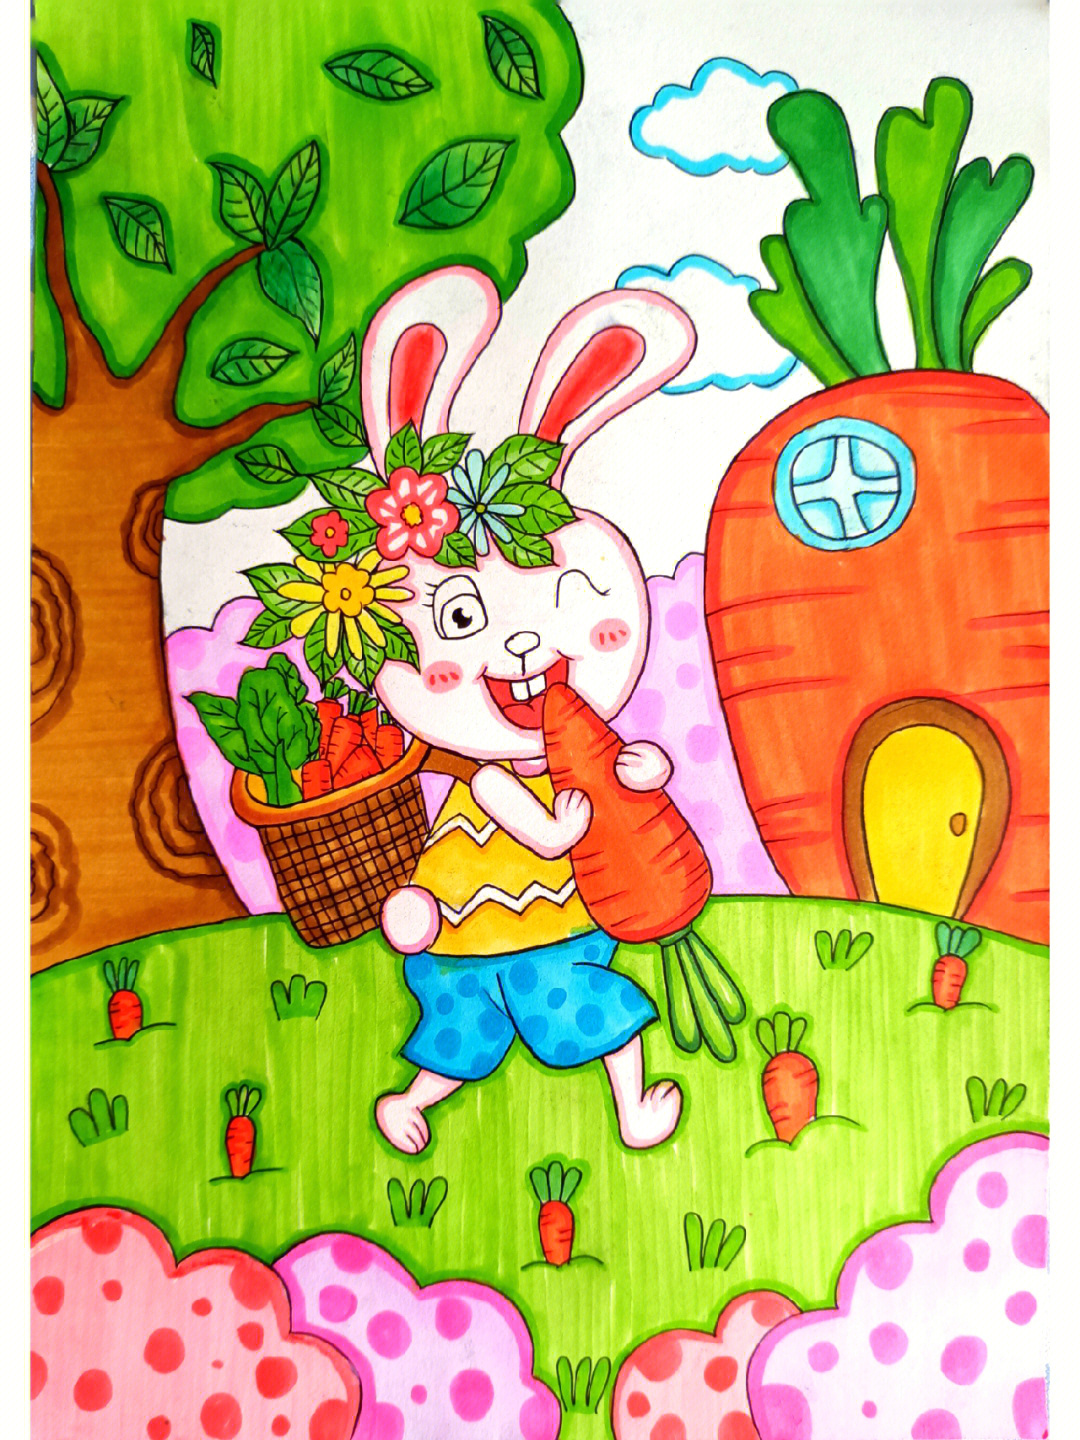 小兔子去采了满满一筐胡萝卜回来啦#创意美术儿童画#画画的日常